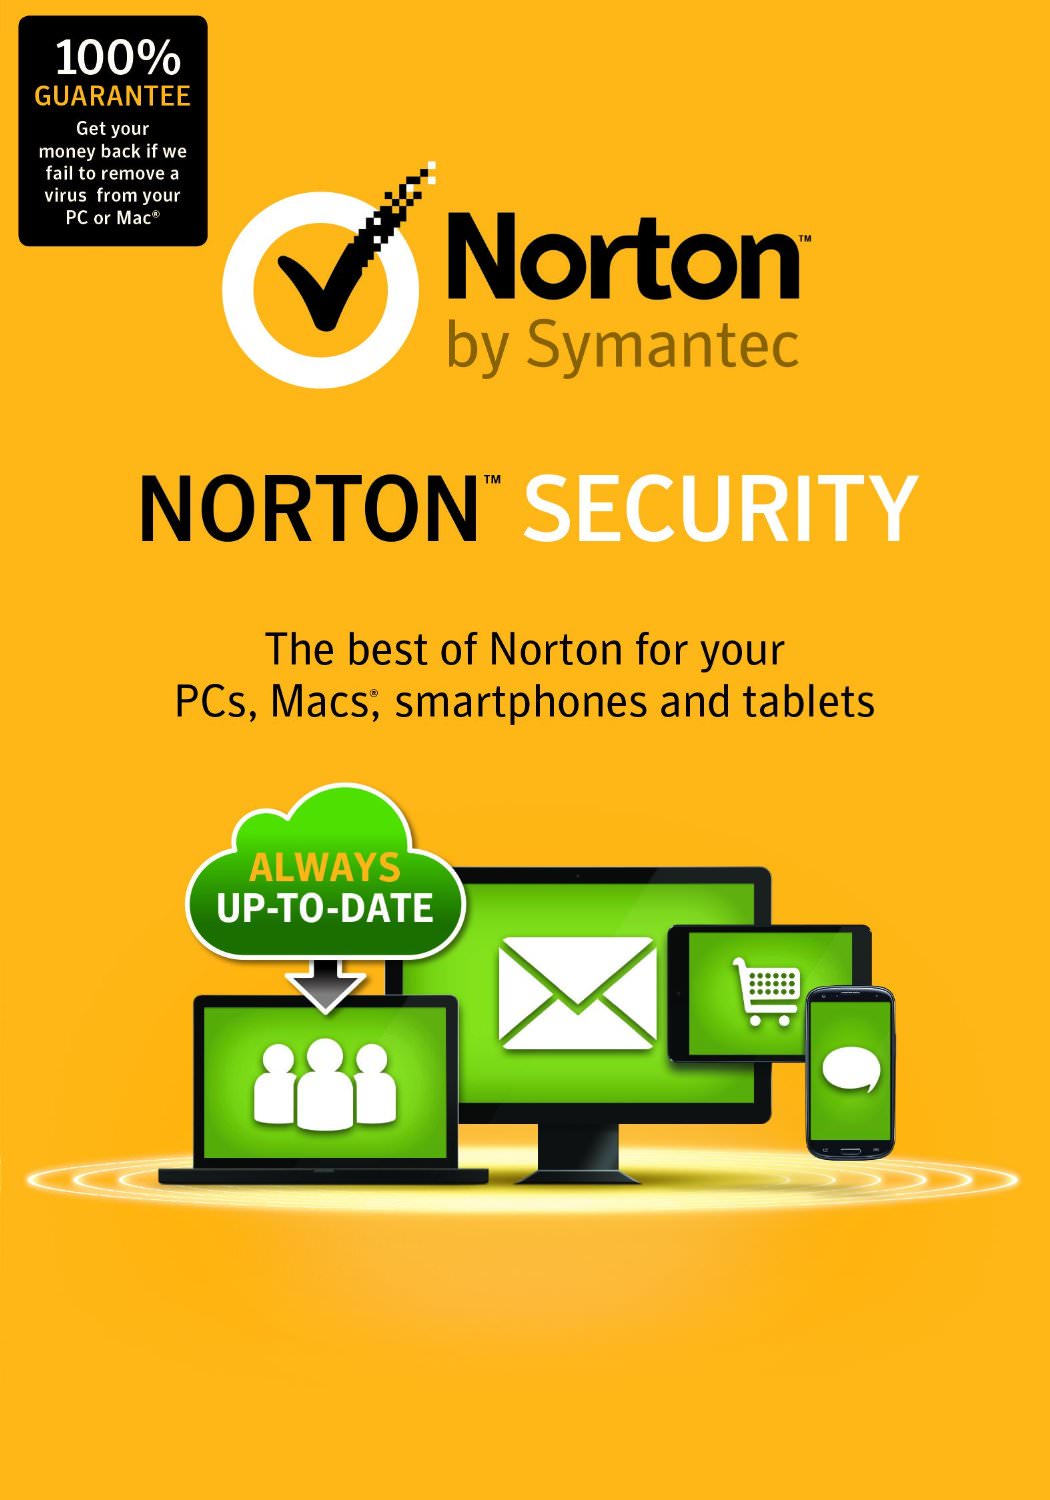 scarica la versione di prova gratuita di norton anti-malware per 30 giorni